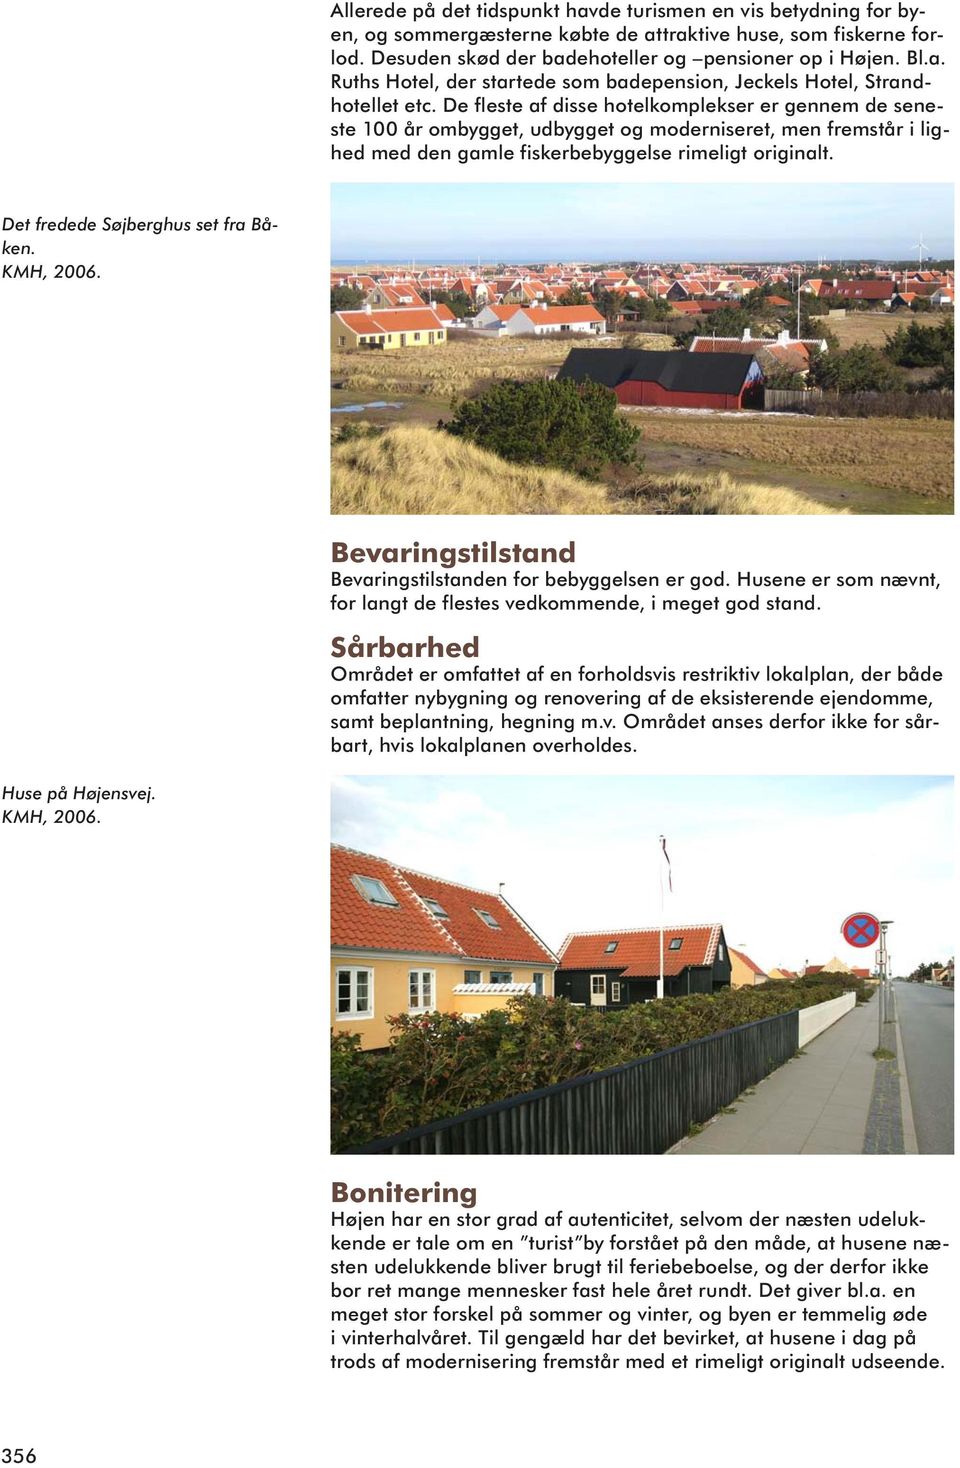 Det fredede Søjberghus set fra Båken. KMH, 2006. Bevaringstilstand Bevaringstilstanden for bebyggelsen er god. Husene er som nævnt, for langt de flestes vedkommende, i meget god stand.